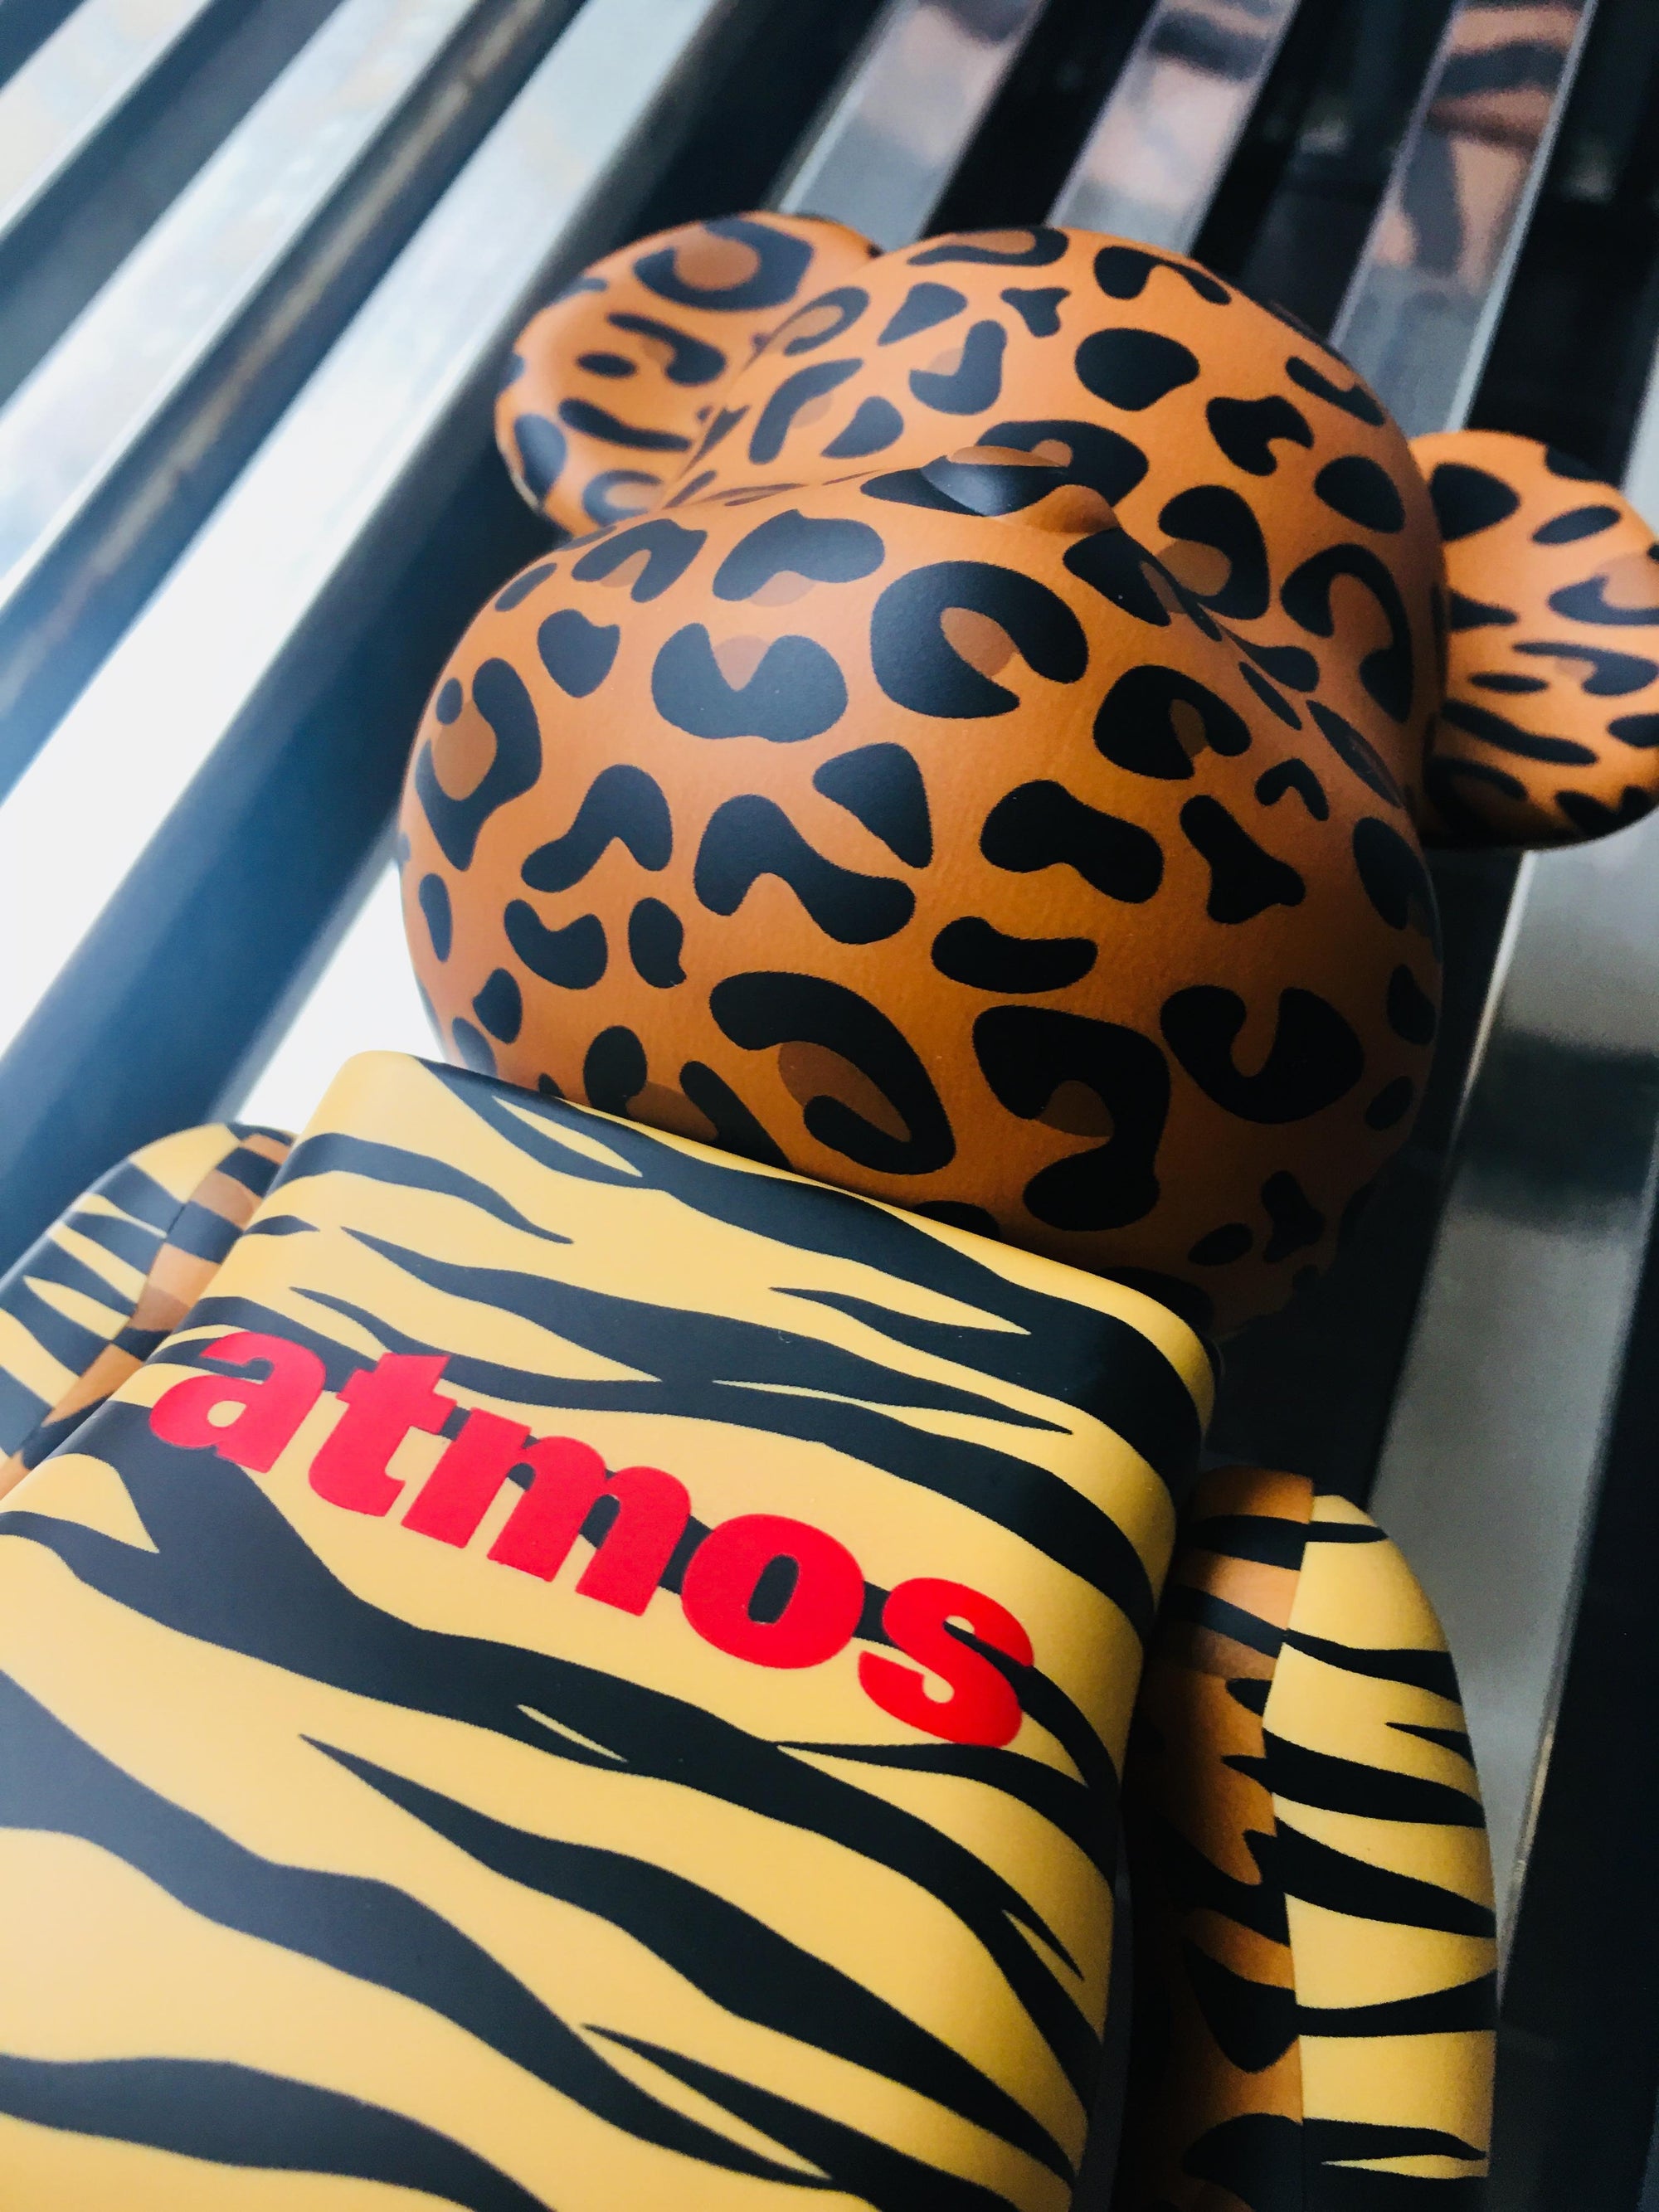 Atmos Animal 400% + 100% Bearbrick Set by Medicom Toy x Atmos